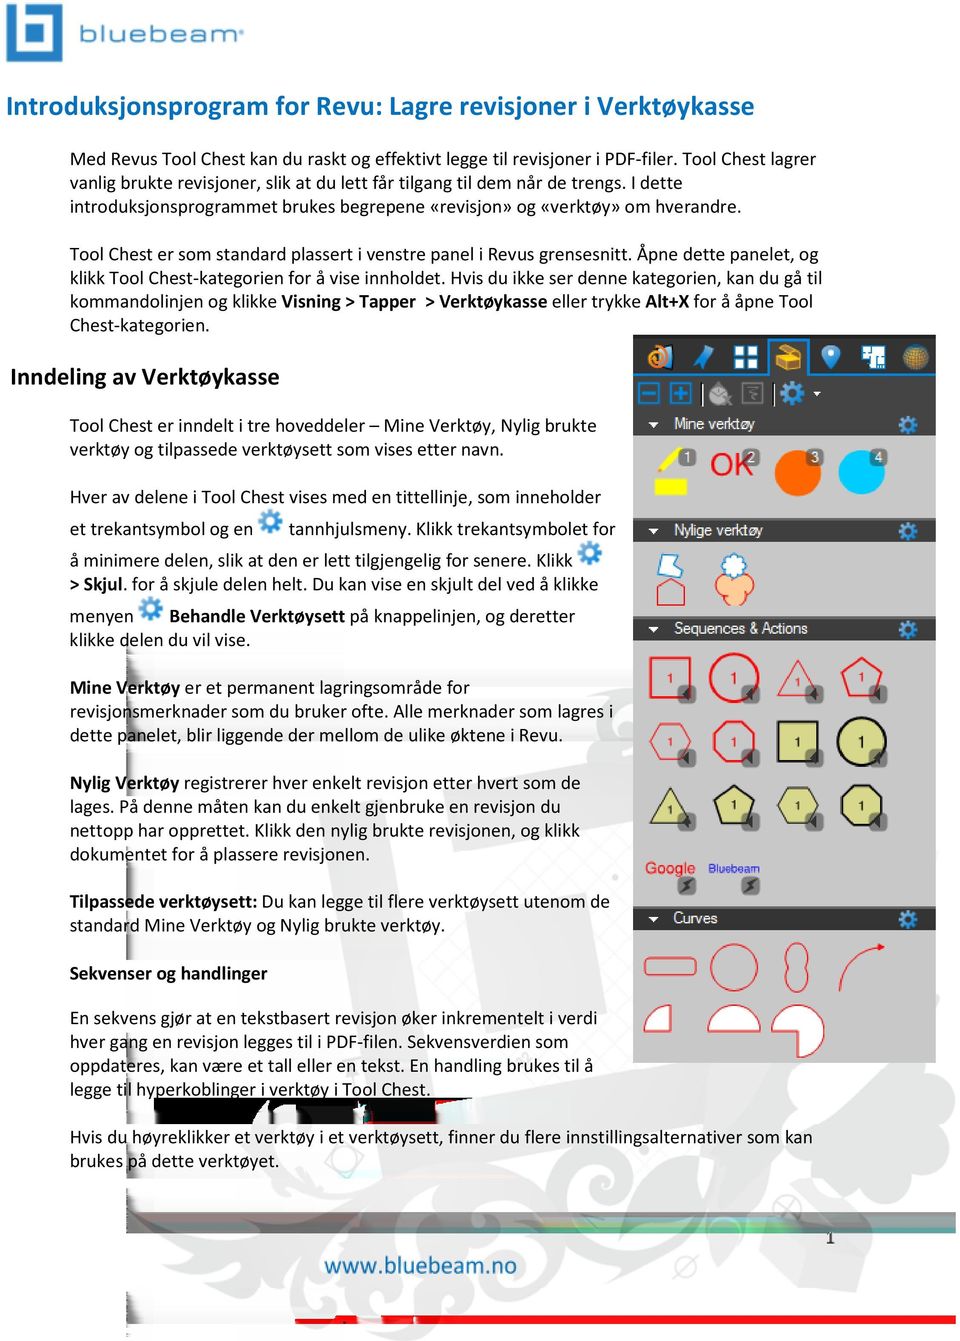 Tool Chest er som standard plassert i venstre panel i Revus grensesnitt. Åpne dette panelet, og klikk Tool Chest-kategorien for å vise innholdet.